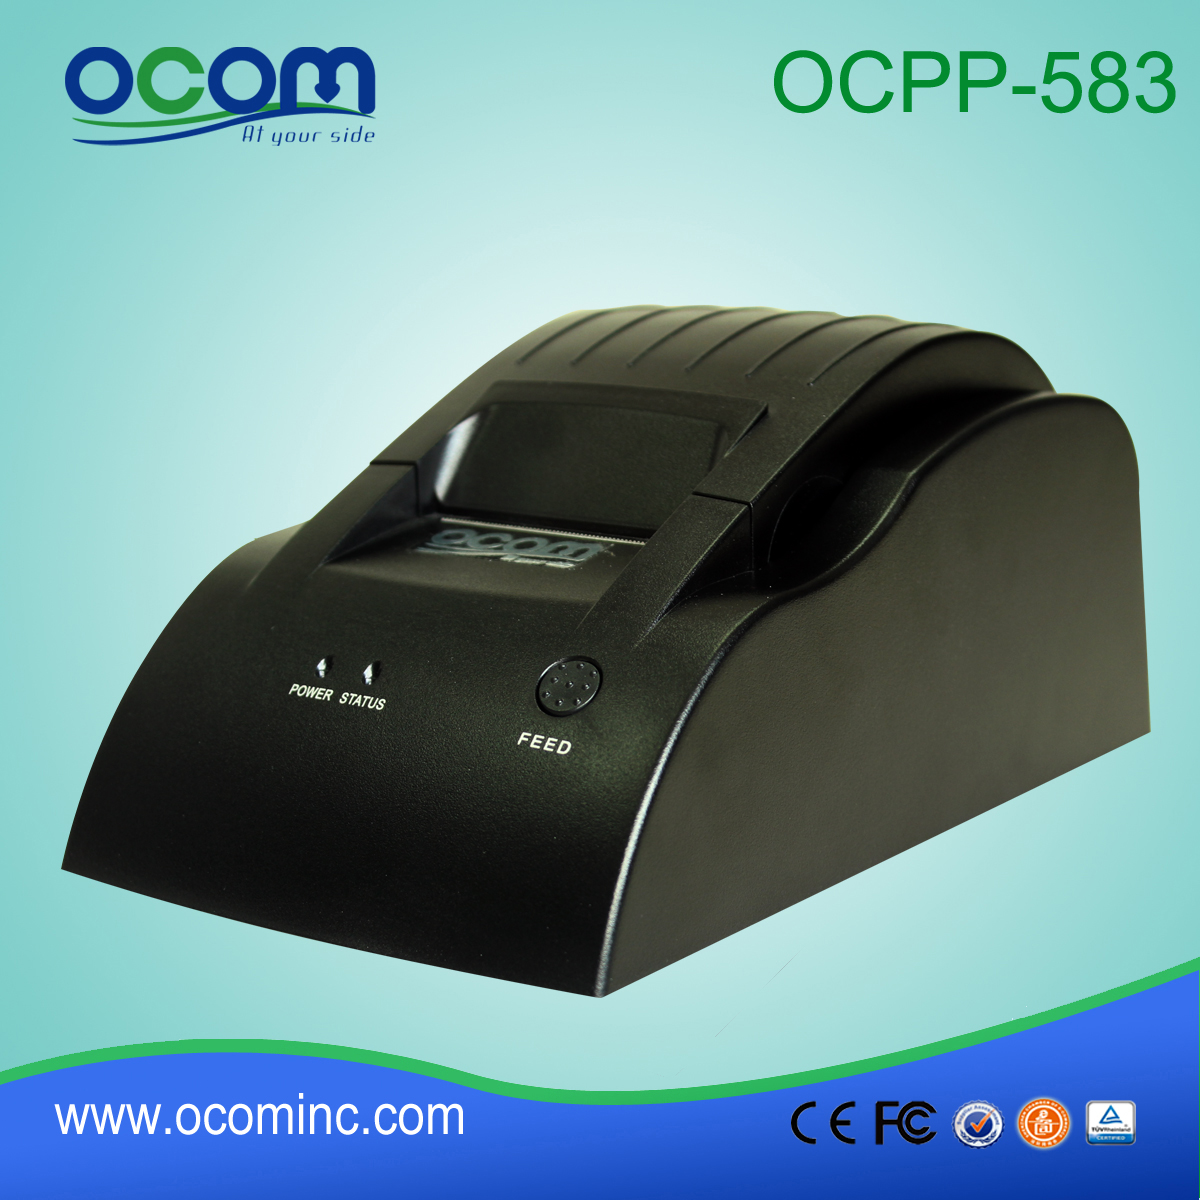 OCPP-583: 2015 58mm d'approvisionnement fiable imprimante ticket thermique, imprimante pos